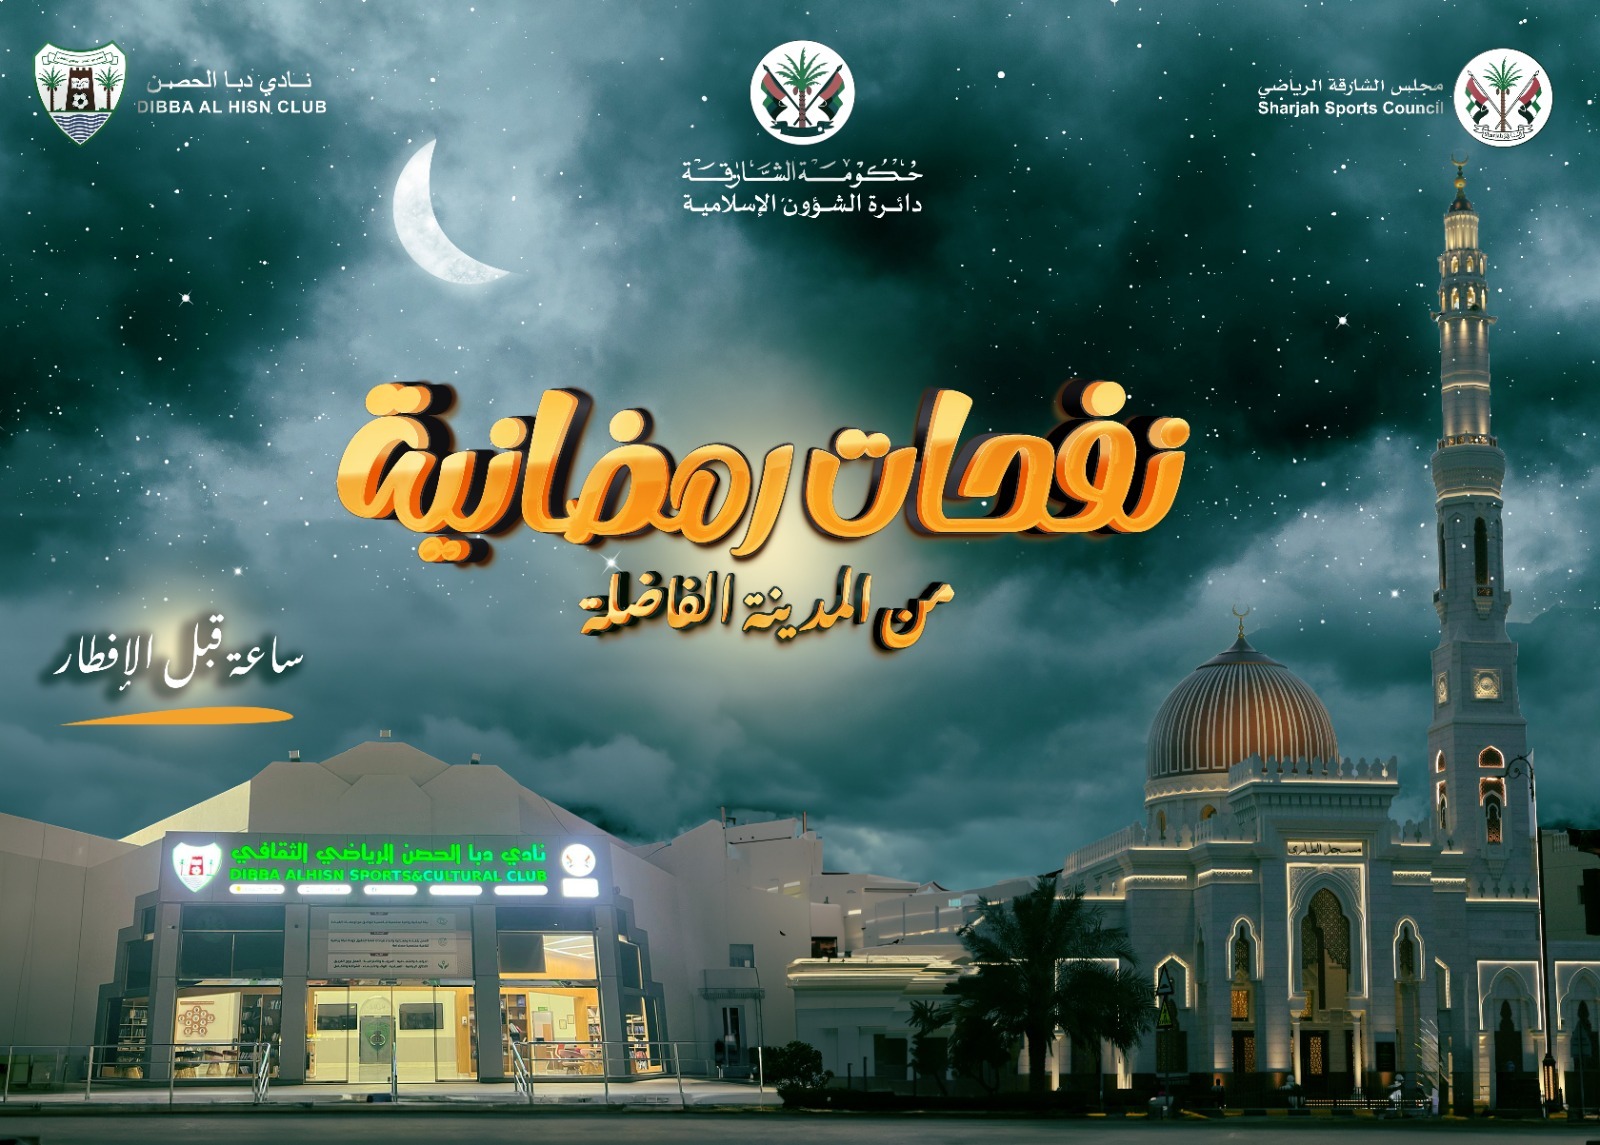 نادي دبا الحصن يطلق نفحات رمضانية بالتعاون مع دائرة الشؤون الإسلامية